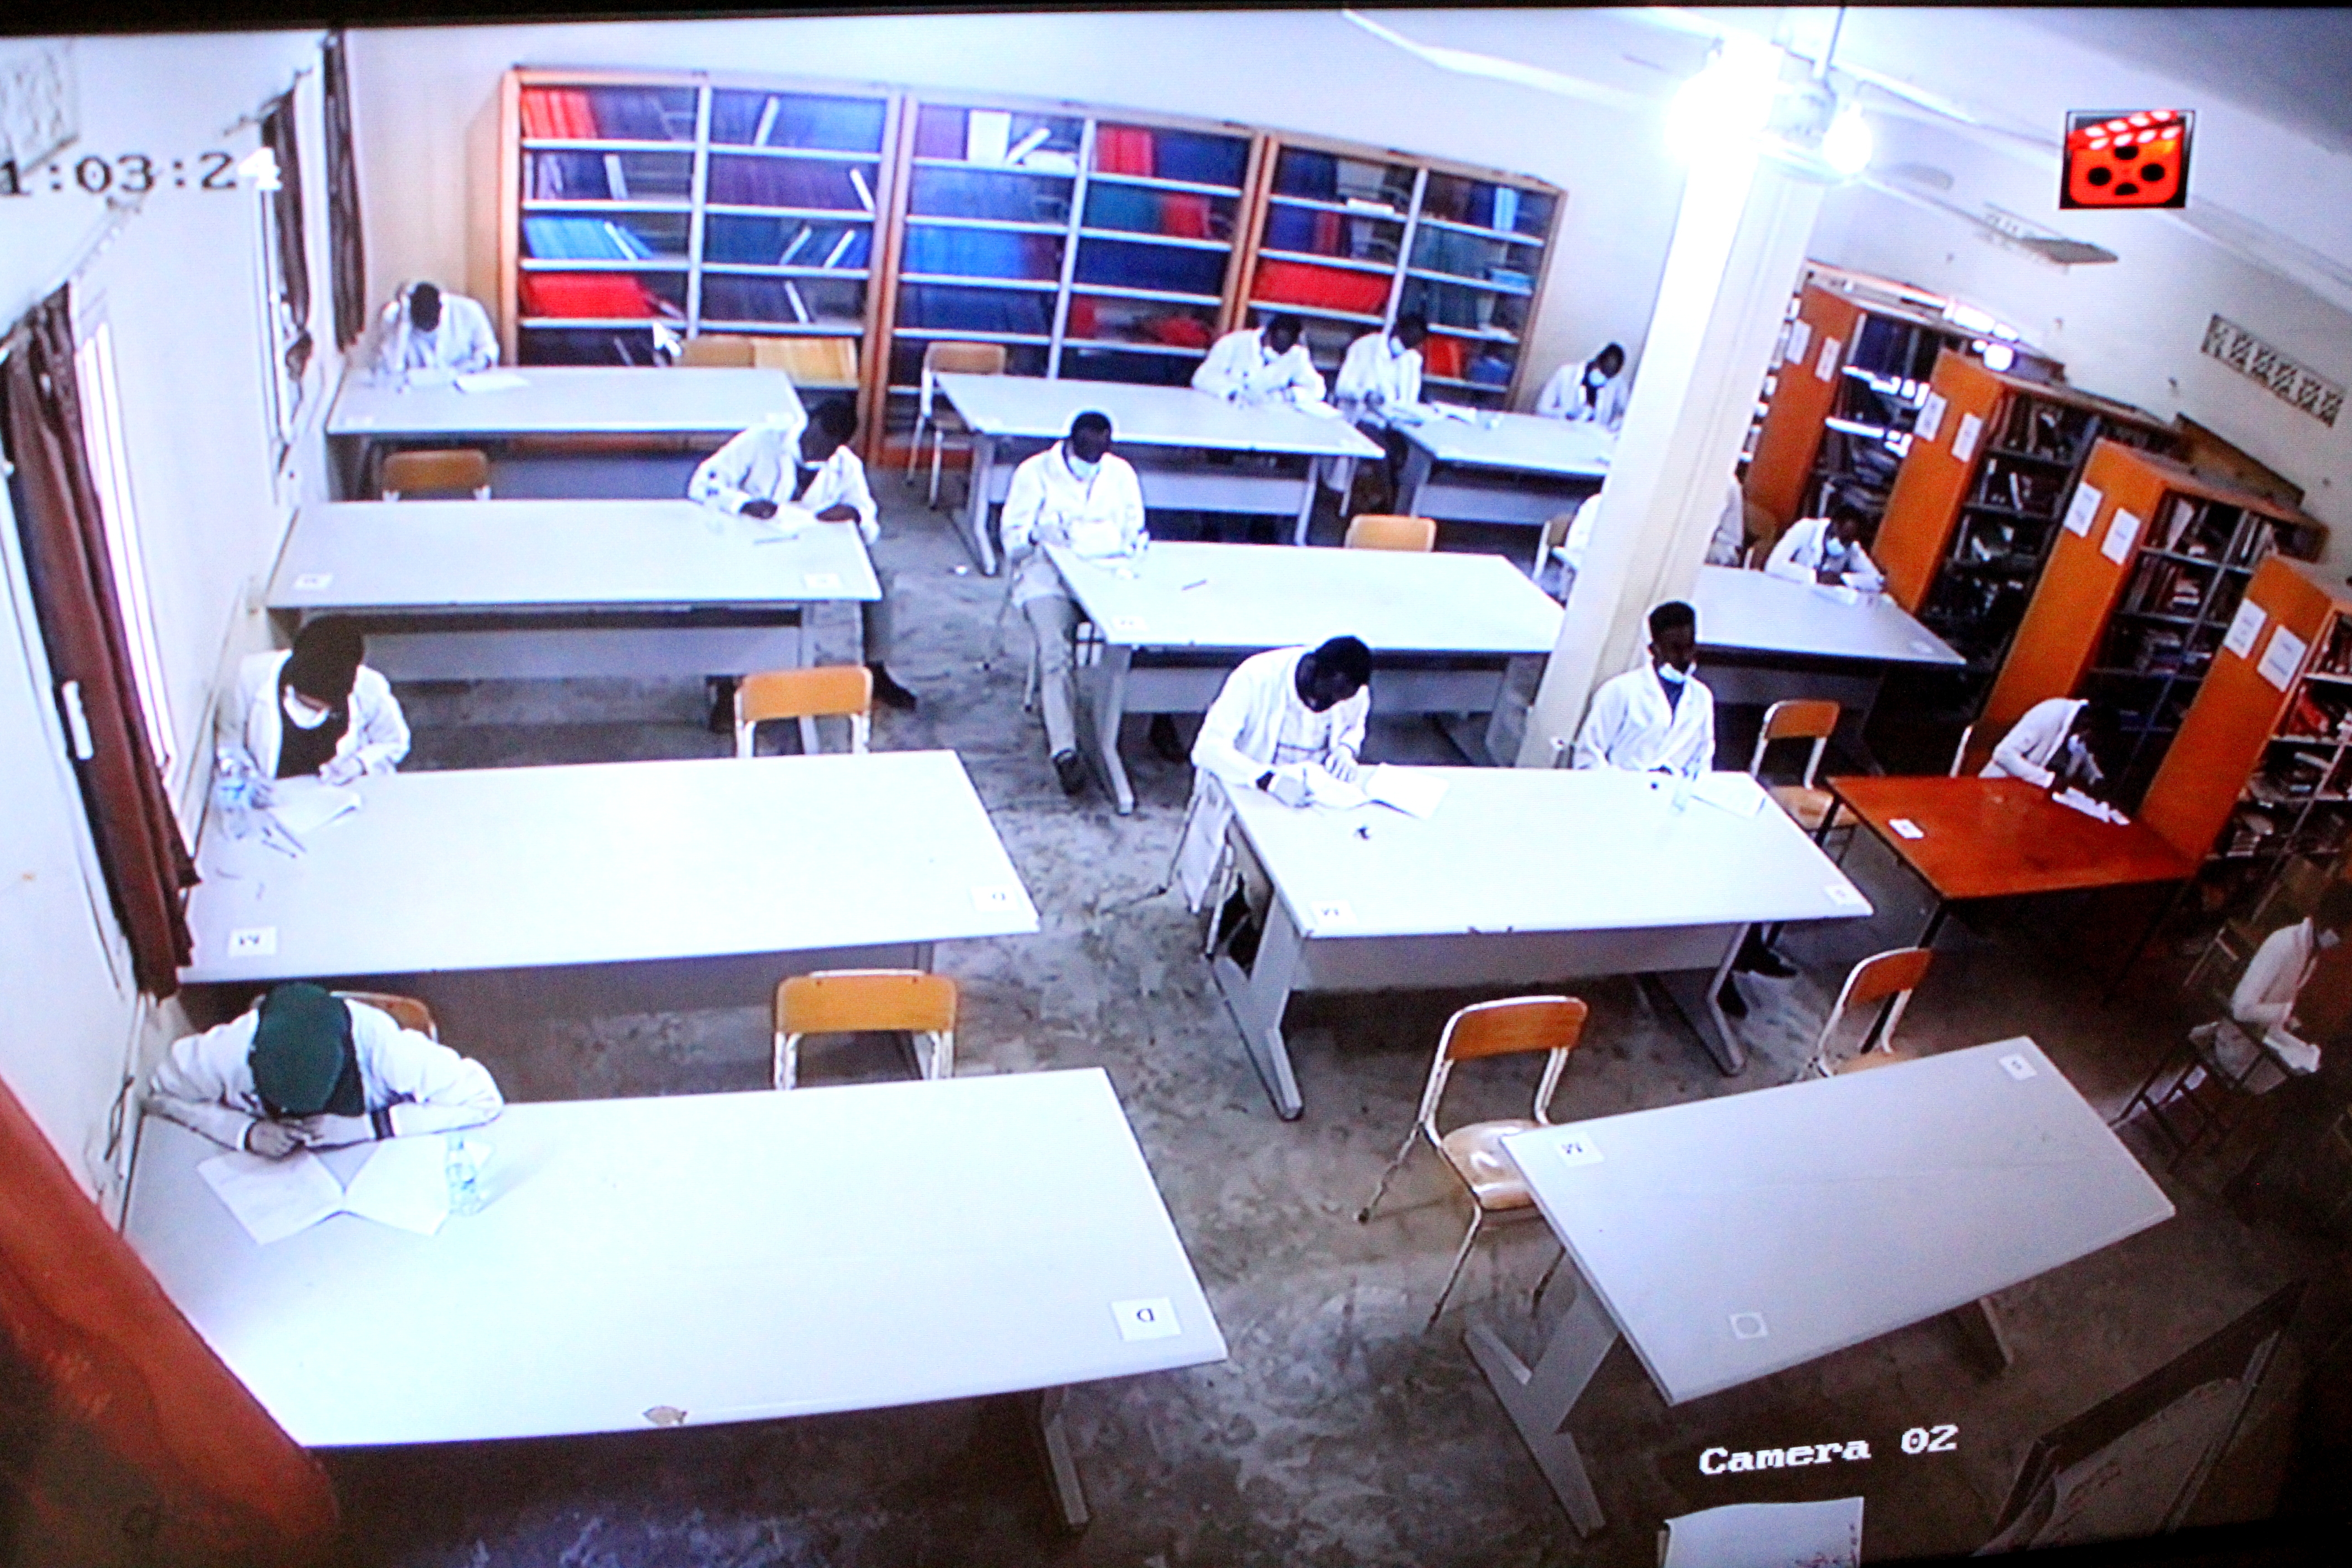 Comprehensive exam is still going  under the surveillance of CCTV cameras